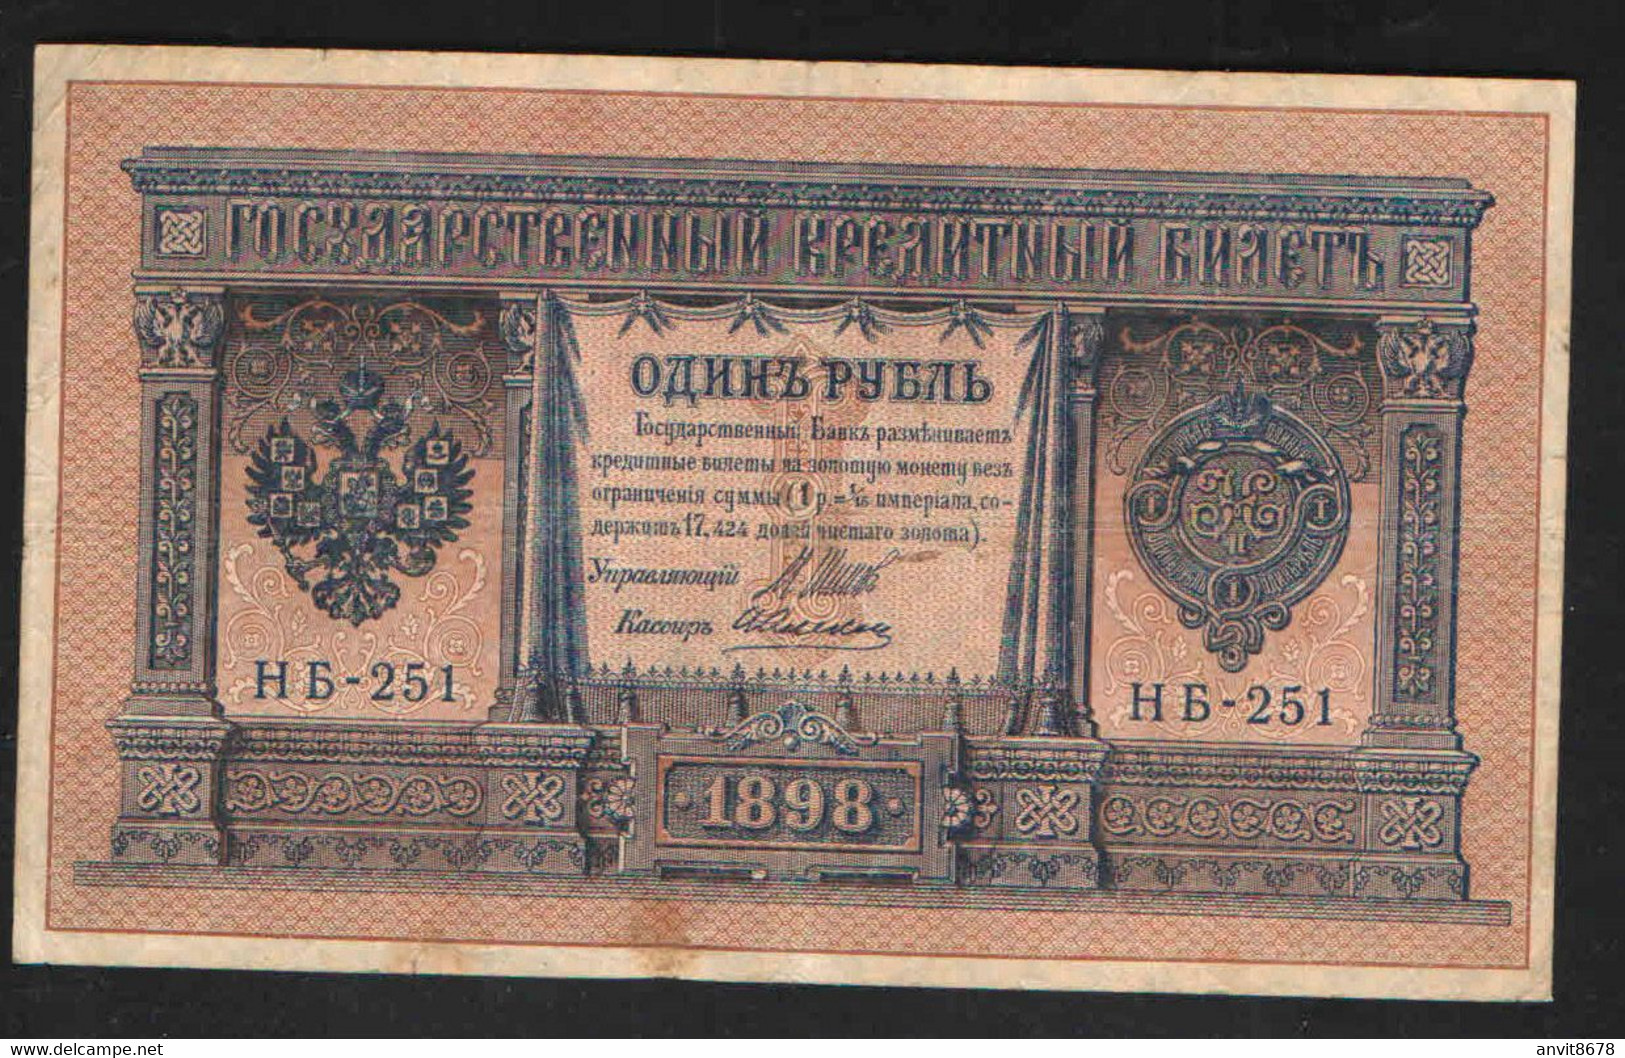 RUSSIA 1 RUBLE SERIE НБ-251   1898 - Rusia